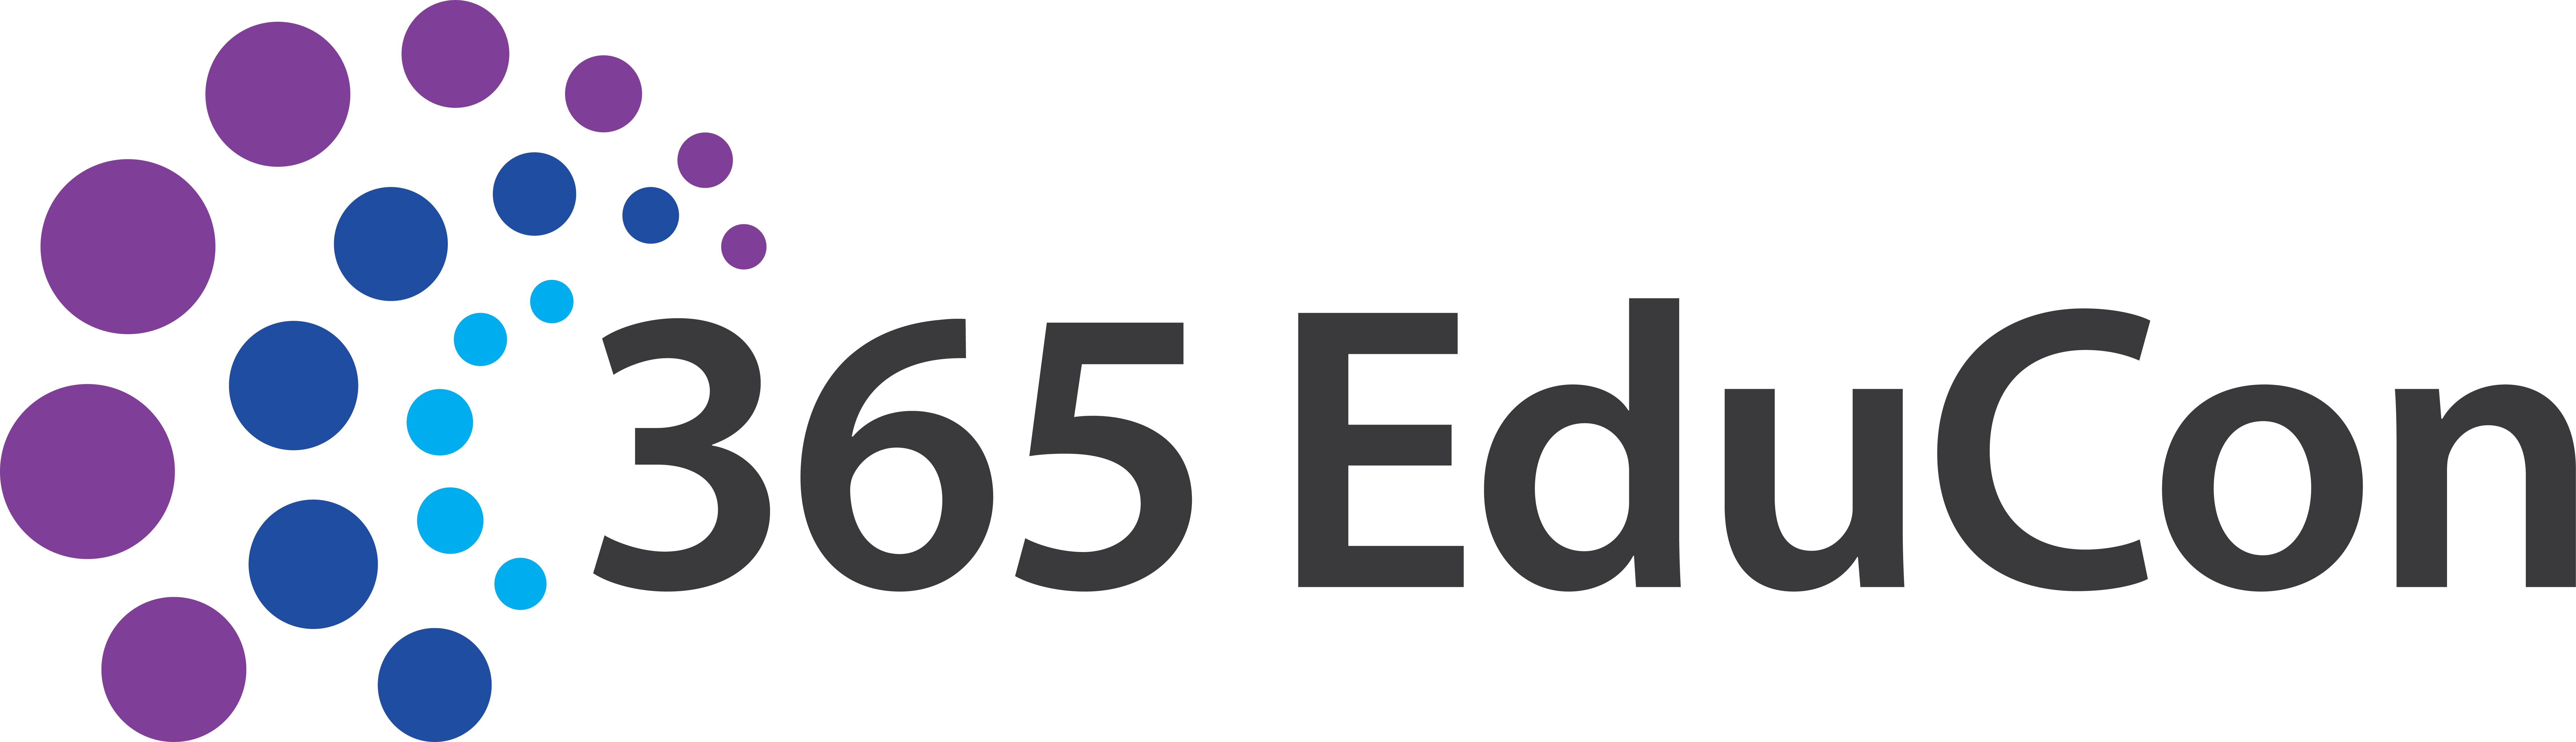 Microsoft 365 EduCon Chicago - A Microsoft 365 Conference